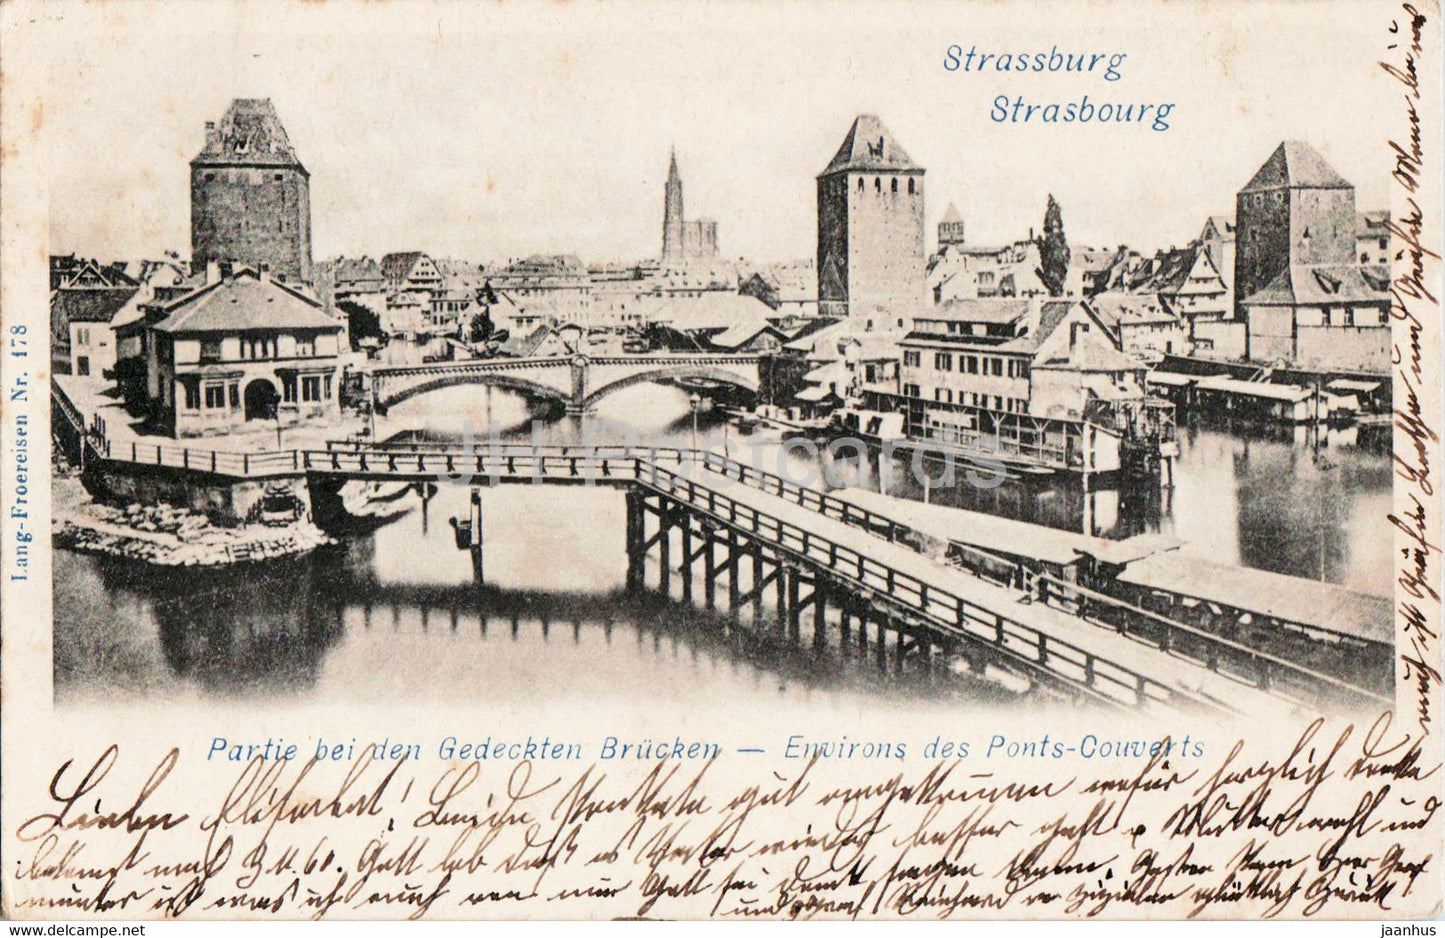 Strasbourg - Strassburg - Partie bei den Gedeckten Brucken - 178 - old postcard - 1908 - France - used - JH Postcards